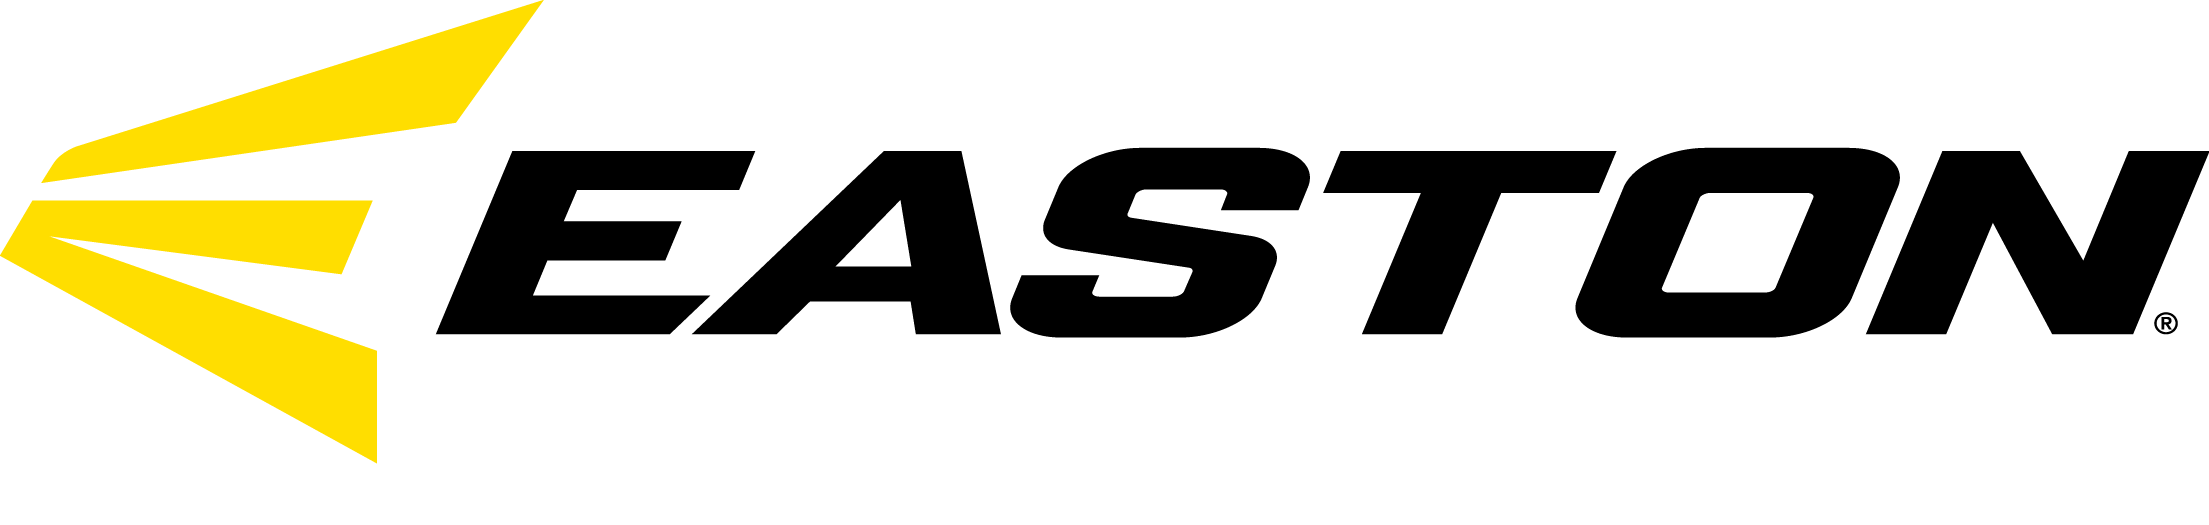 Easton Softball Logo - Team Uniforms. Sporting Goods